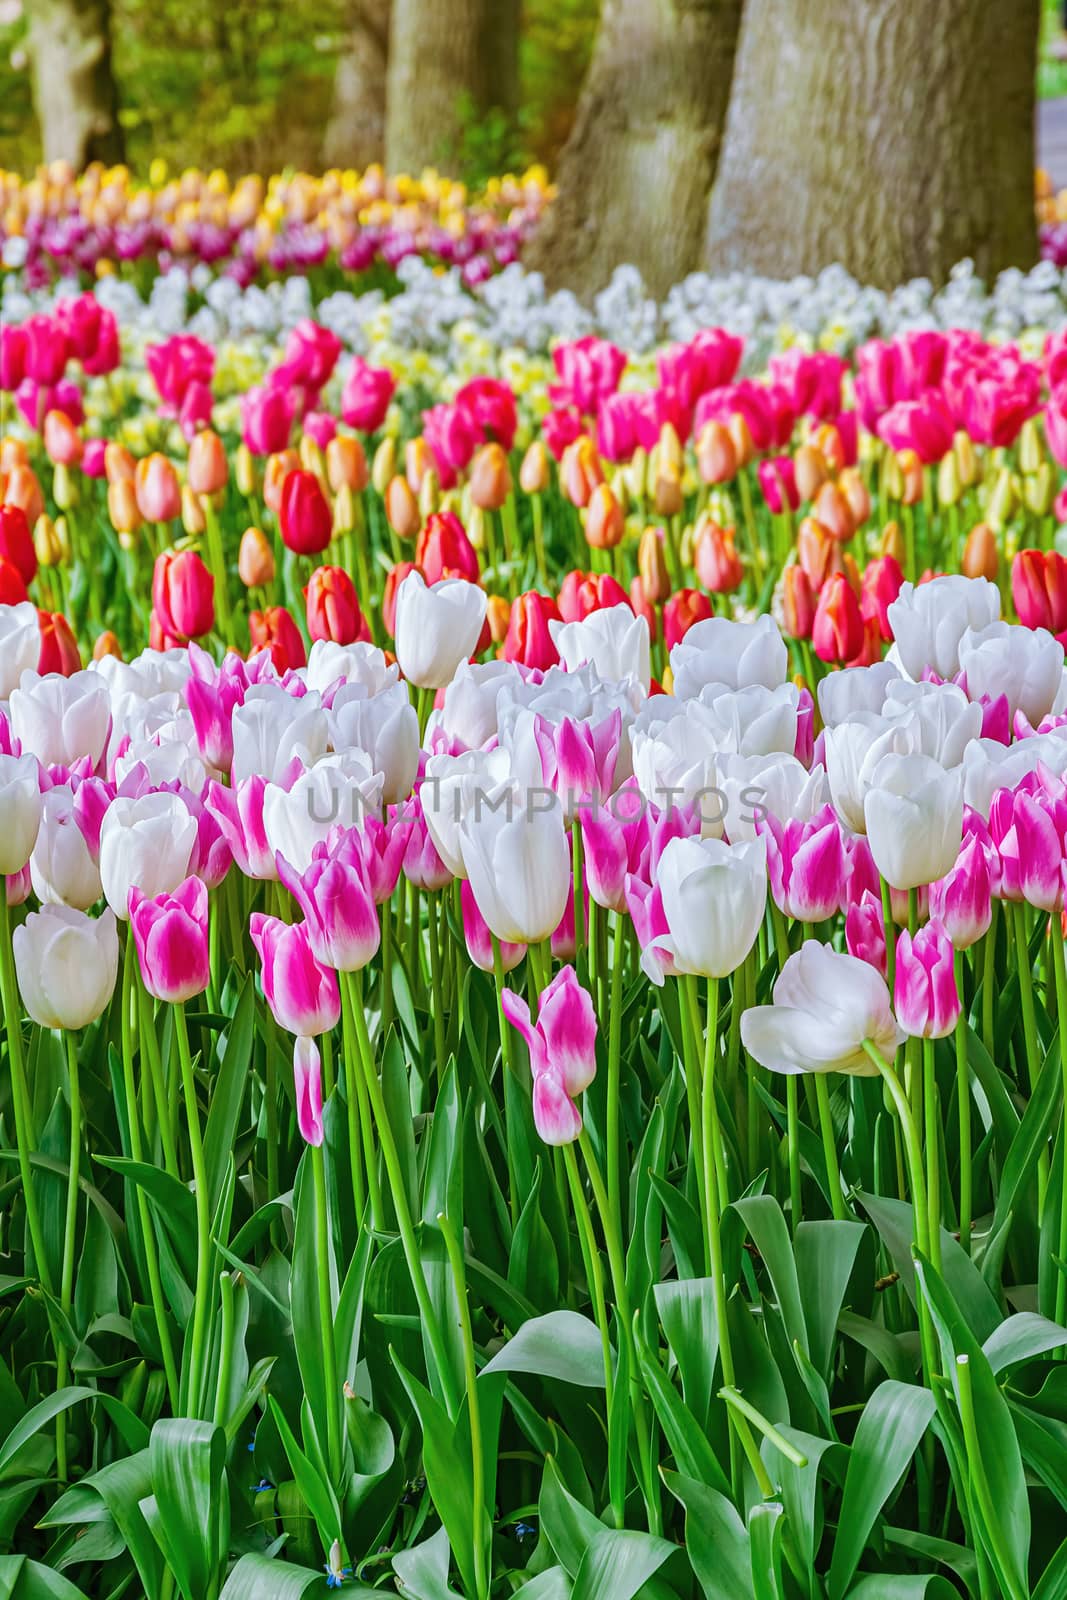 Flowerbed of tulips in the garden. Springtime in Netherlands